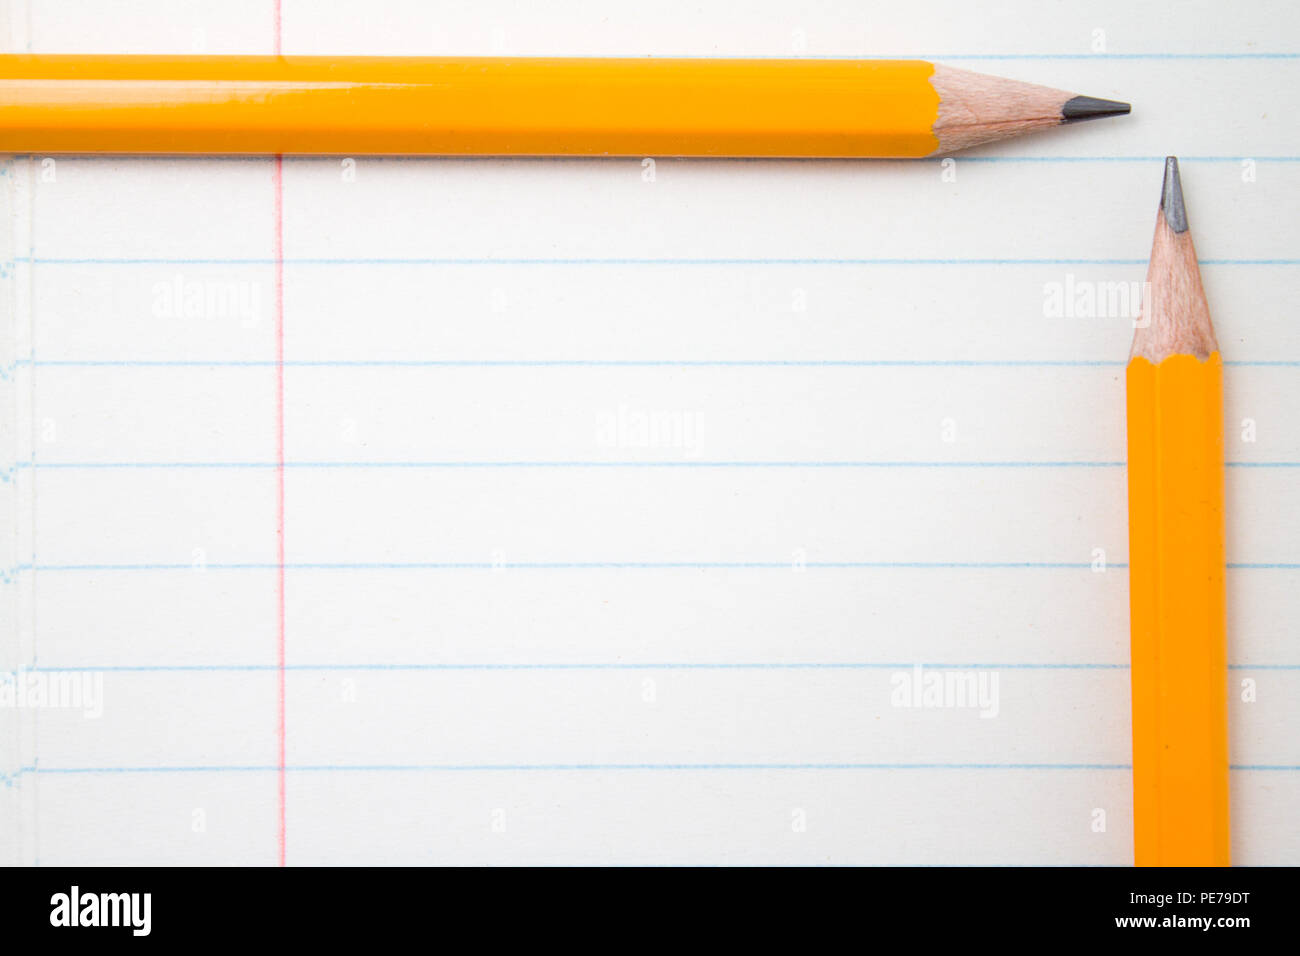 Retour à l'école, l'éducation concept - crayons orange close up et la composition livre sur l'arrière-plan pour l'éducation nouvelle année académique commence ou à long terme de l'étude Banque D'Images